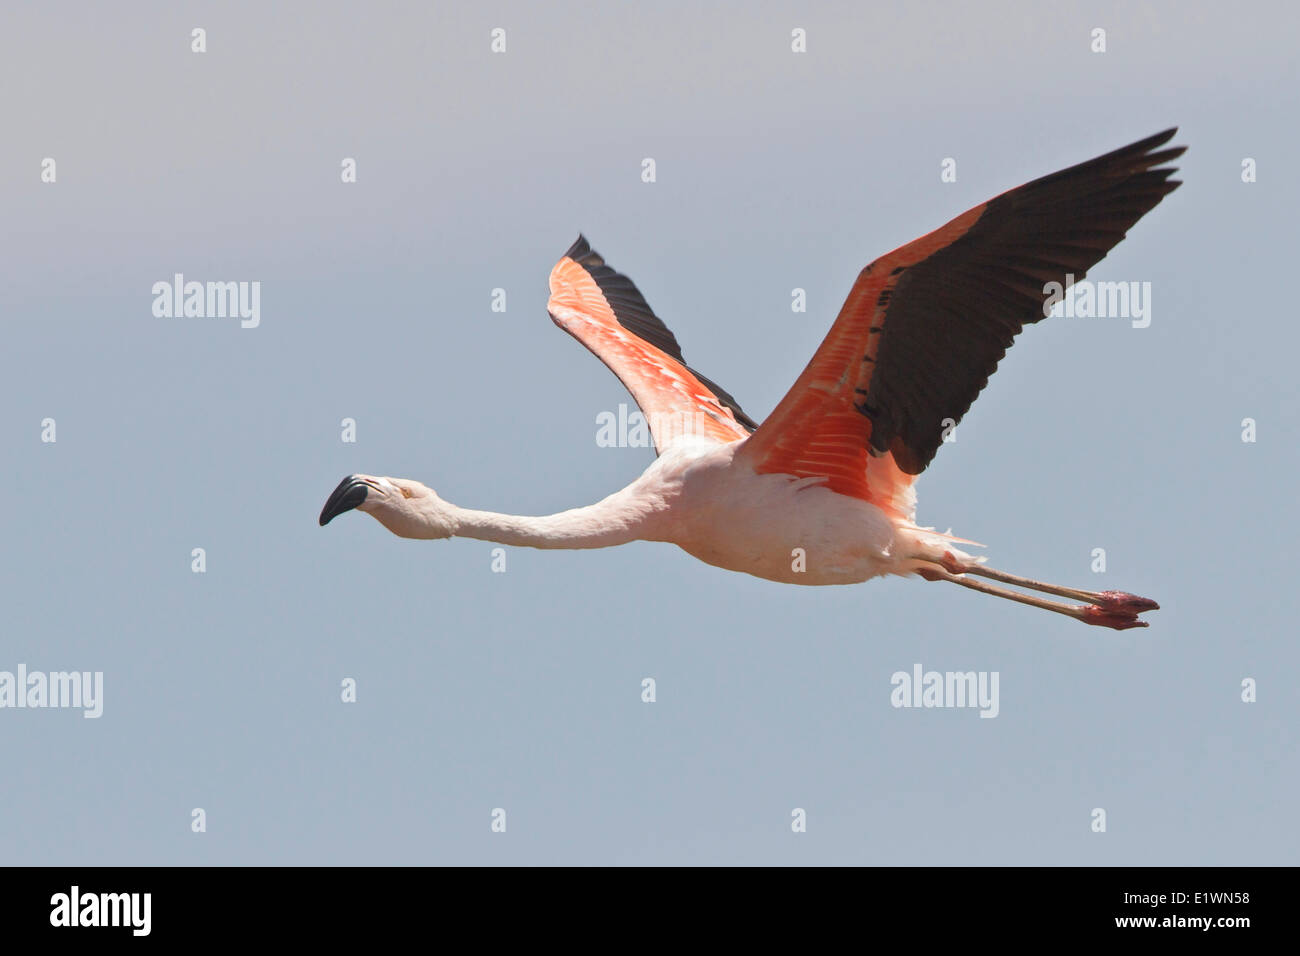 Chilean Flamingo (Phoenicopterus chilensis) in flight in Bolivia, South America. Stock Photo